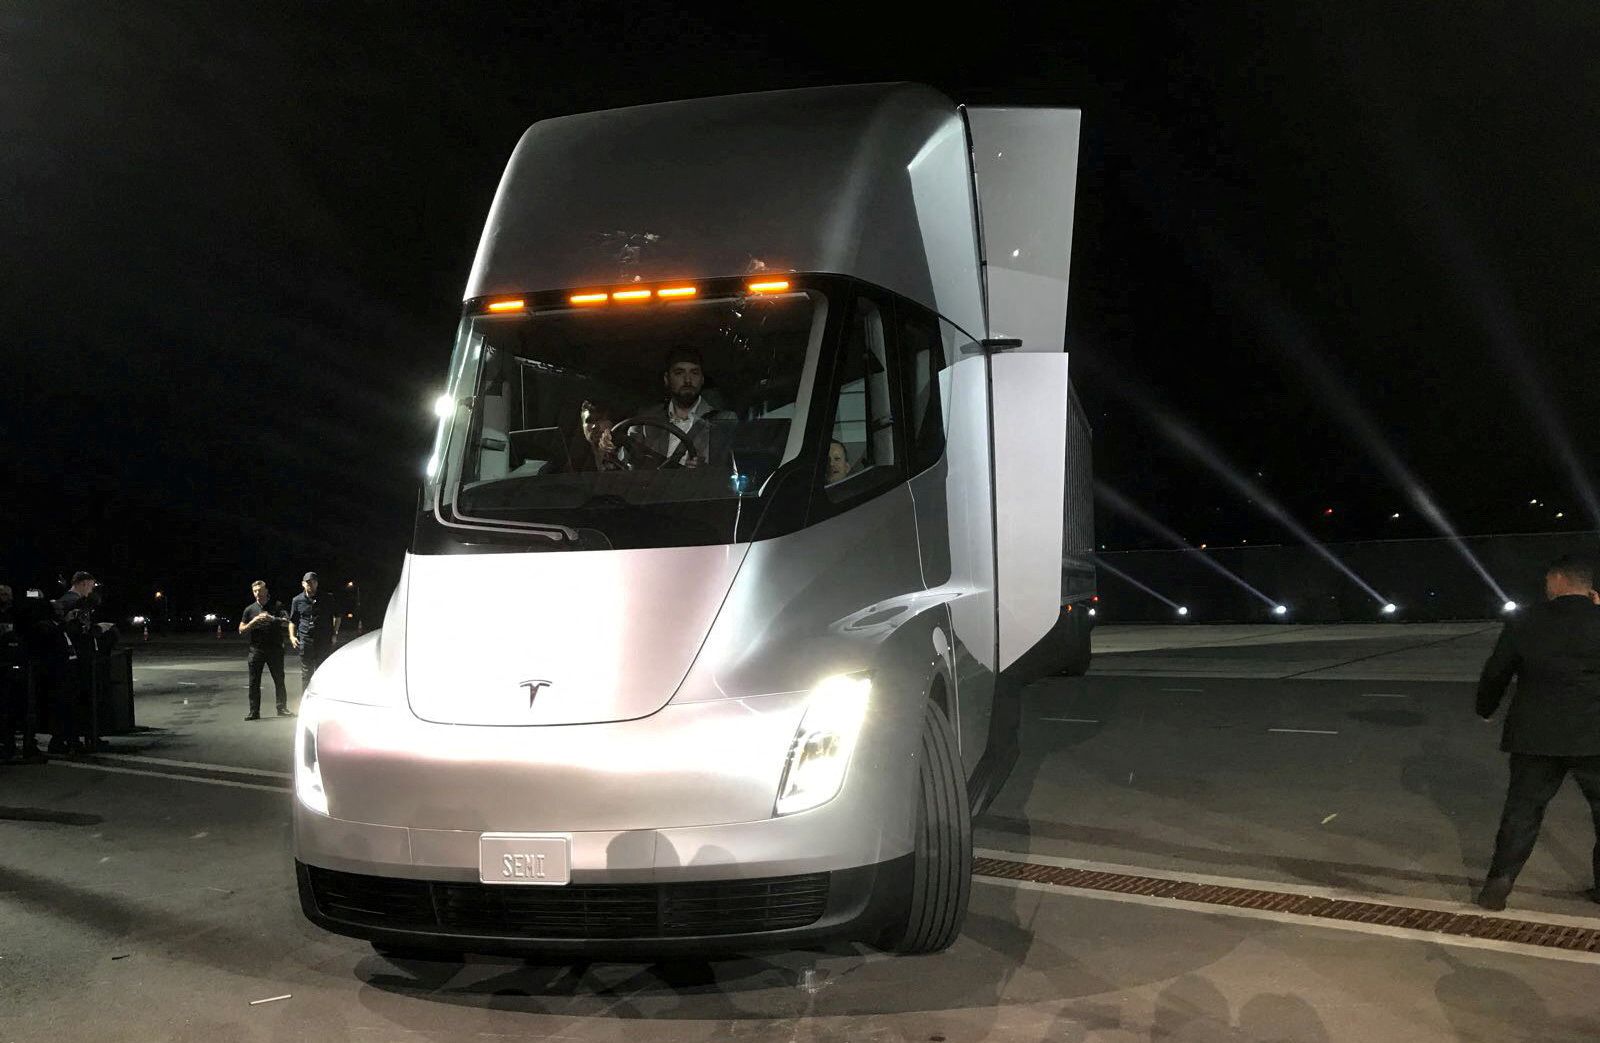 Το νέο ηλεκτρικό ημιφορτηγό της Tesla - εδώ είναι το πρώτο ενδεικτικό σχέδιο - αποκαλύπτεται πέντε χρόνια πριν μπει σε γραμμή παραγωγής, κατά τη διάρκεια παρουσίασης στο Hawthorne, Καλιφόρνια, ΗΠΑ, 16 Νοεμβρίου 2017 REUTERS/Alexandria Sage/File Photo